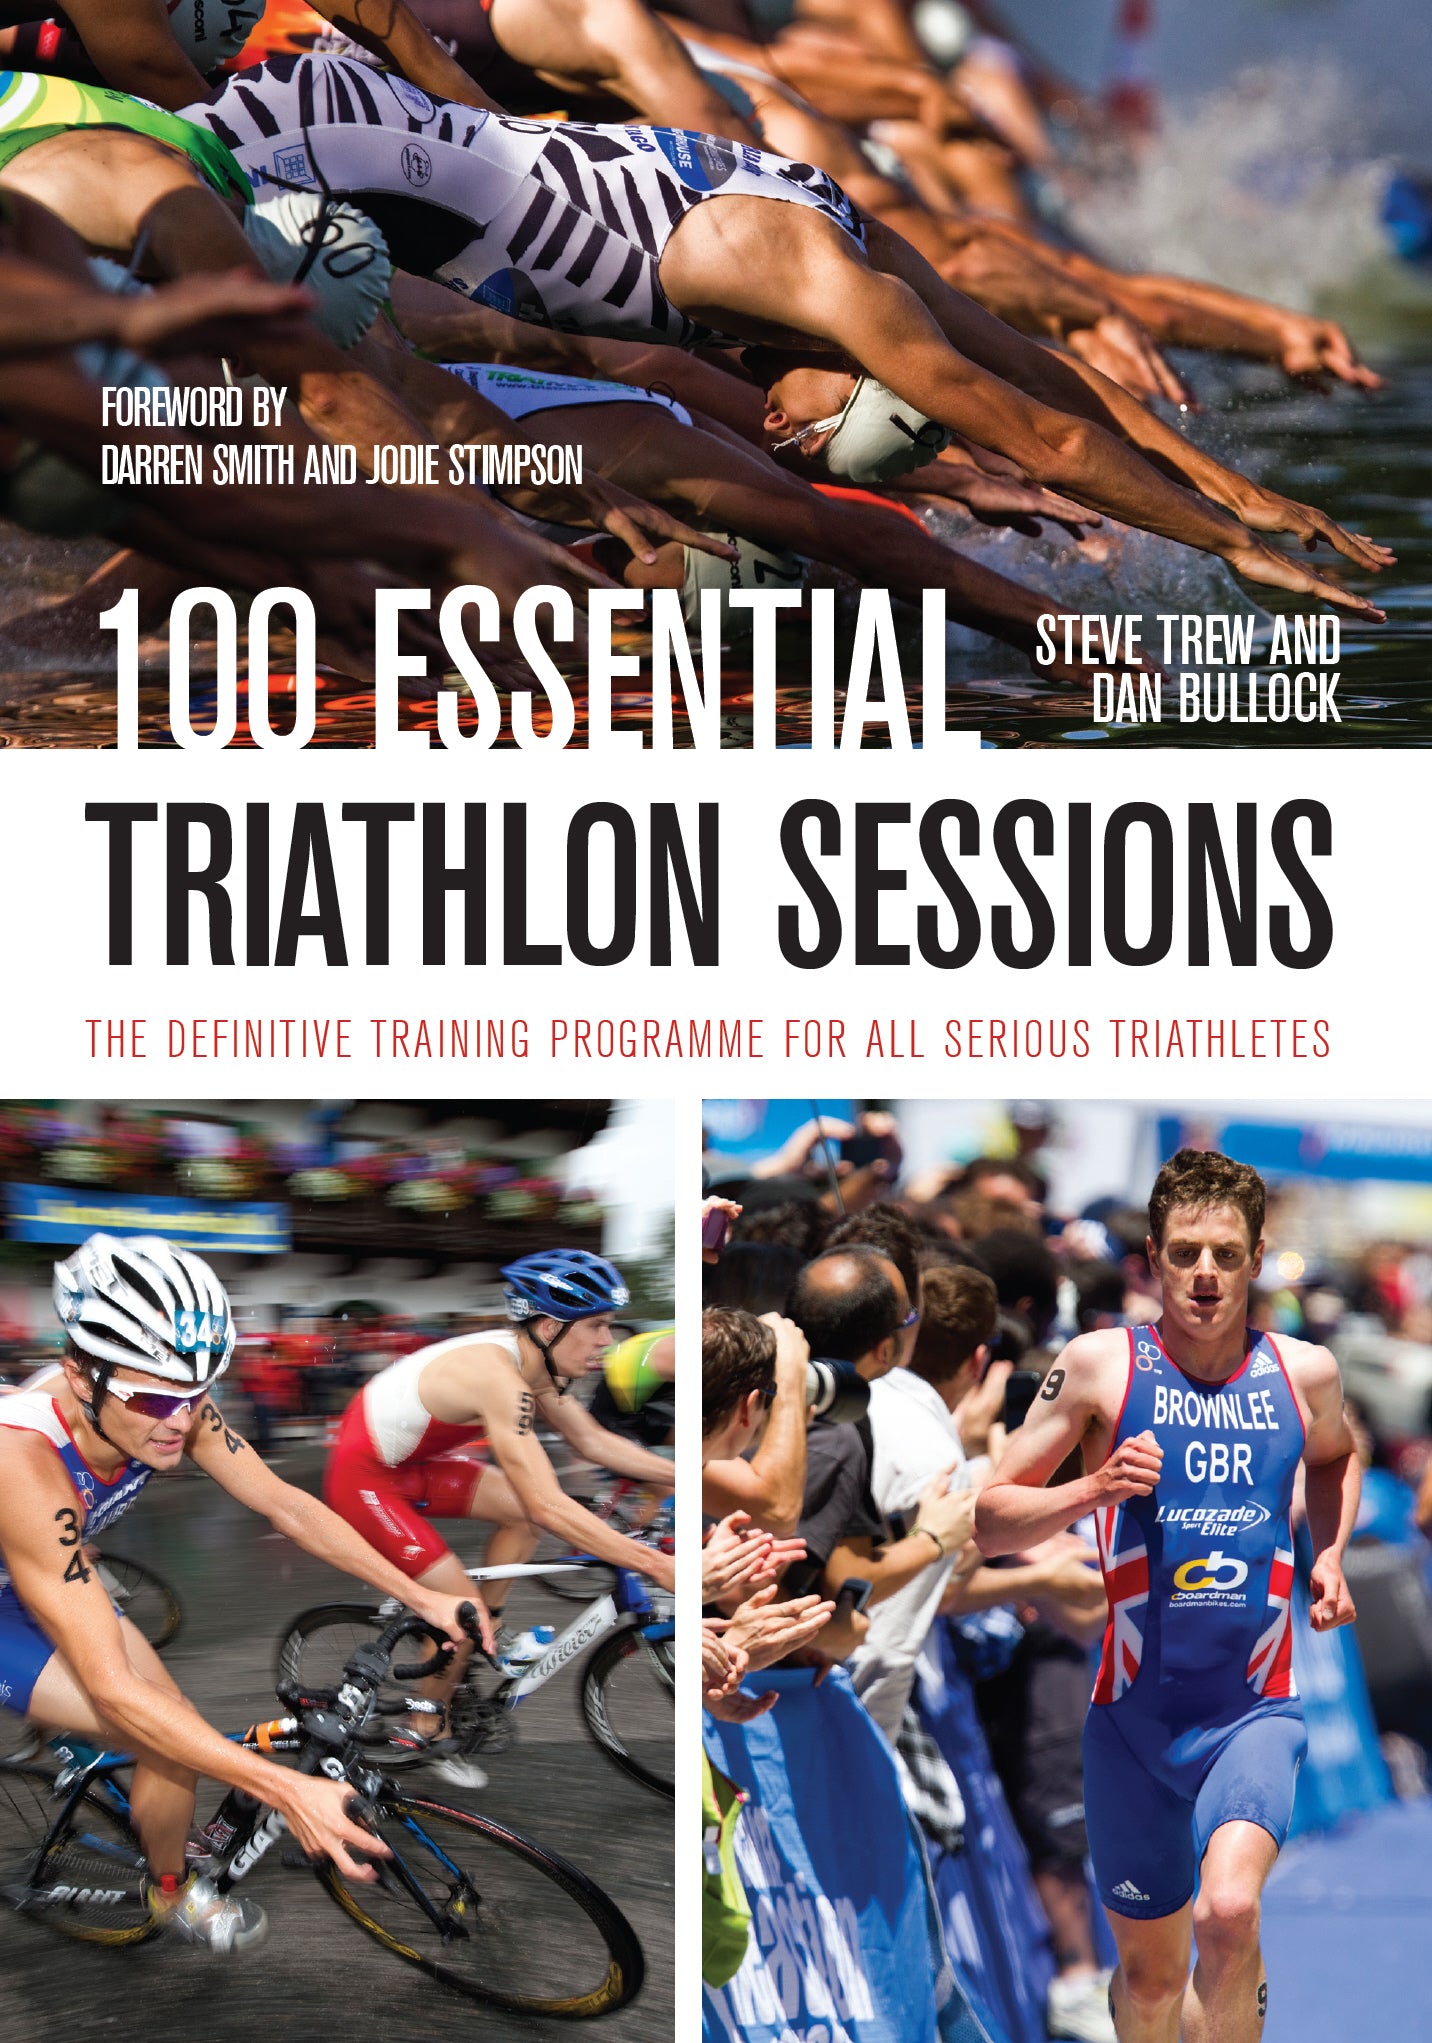 100 Essential Triathlon Sessions